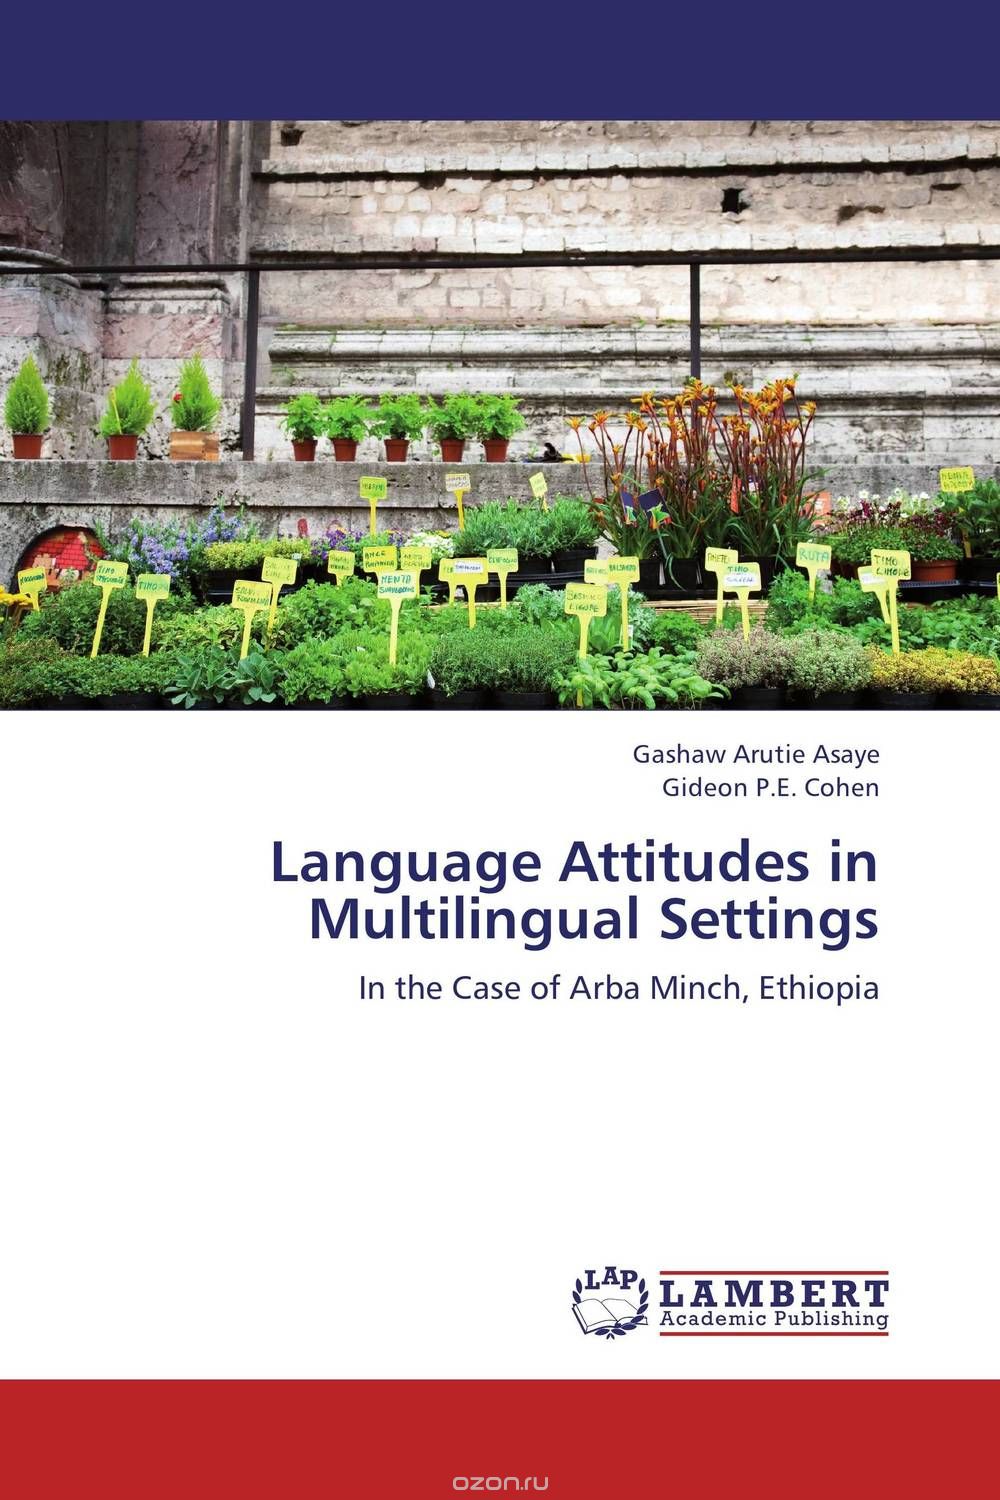 Скачать книгу "Language Attitudes in Multilingual Settings"